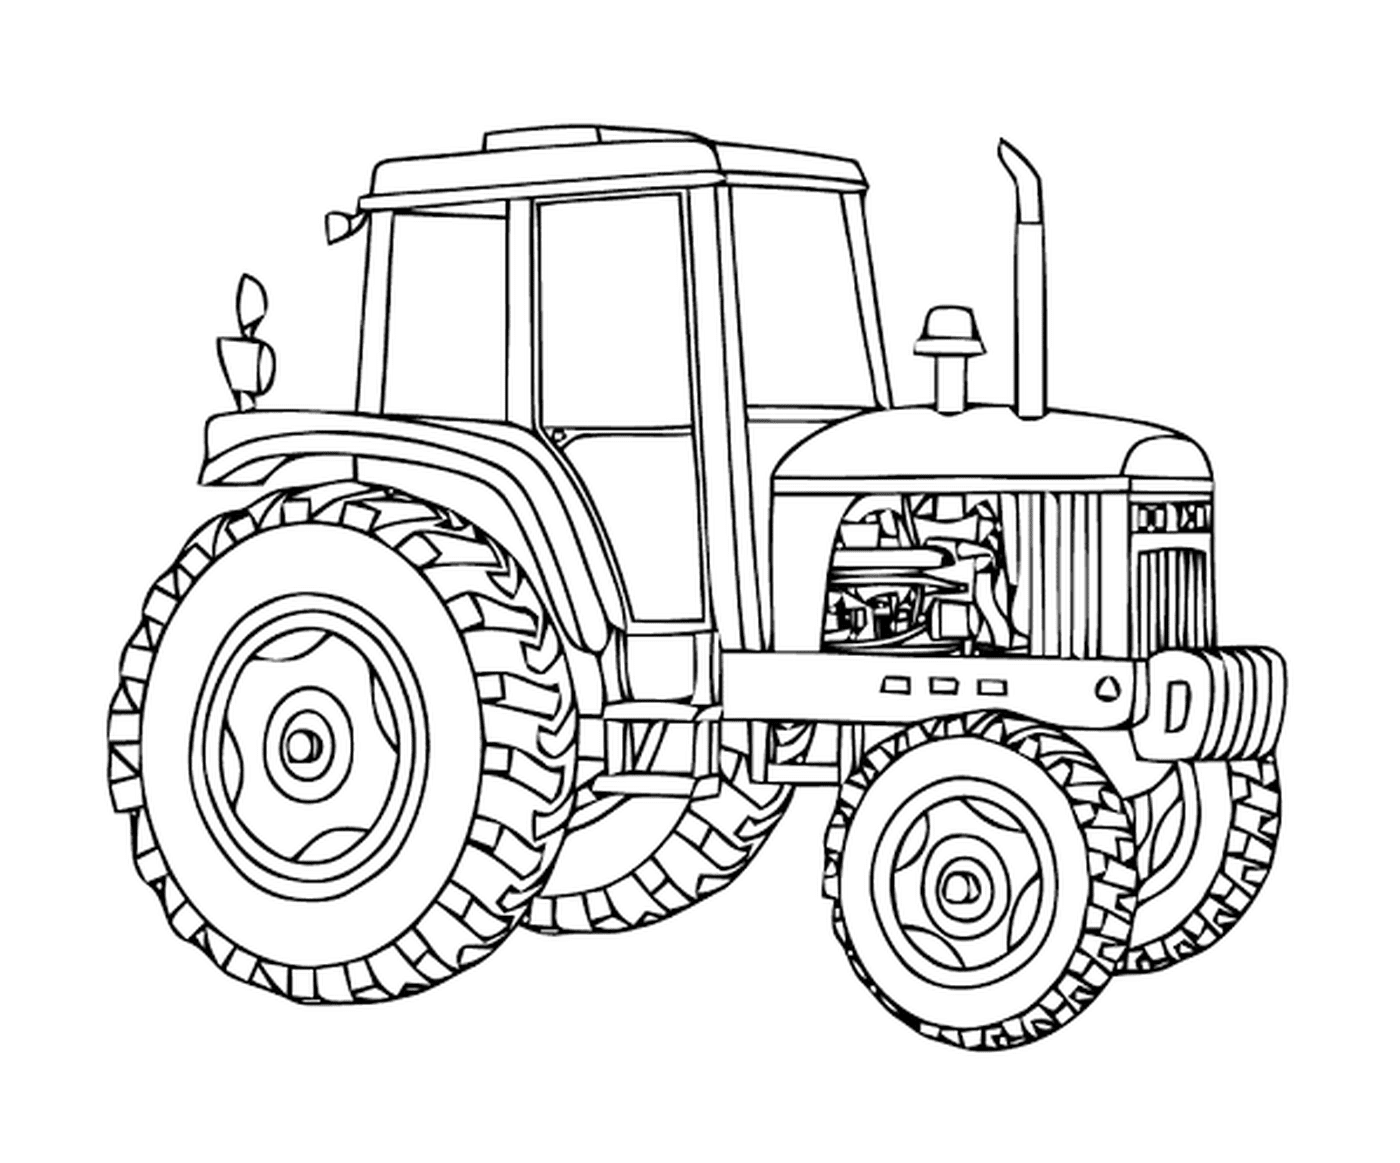  Massey Ferguson Tractor, veículo agrícola poderoso 